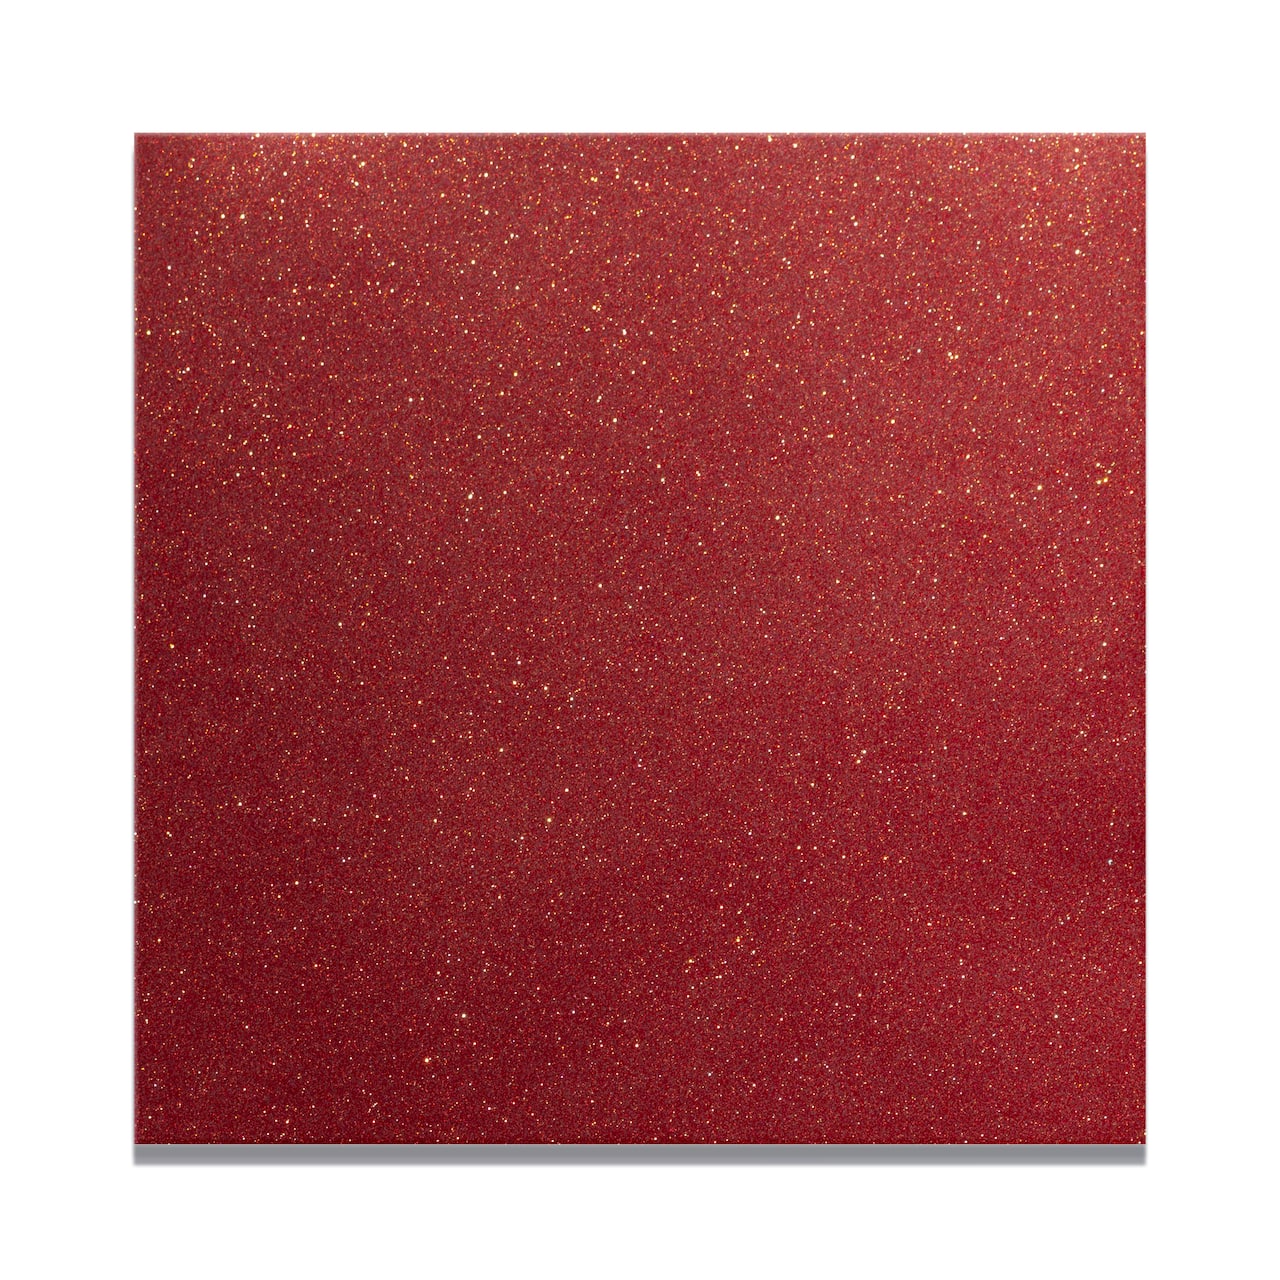 Siser EasyPSV Permanent Glitter Vinyl Sheet - Brick Red - 12 x 12 in